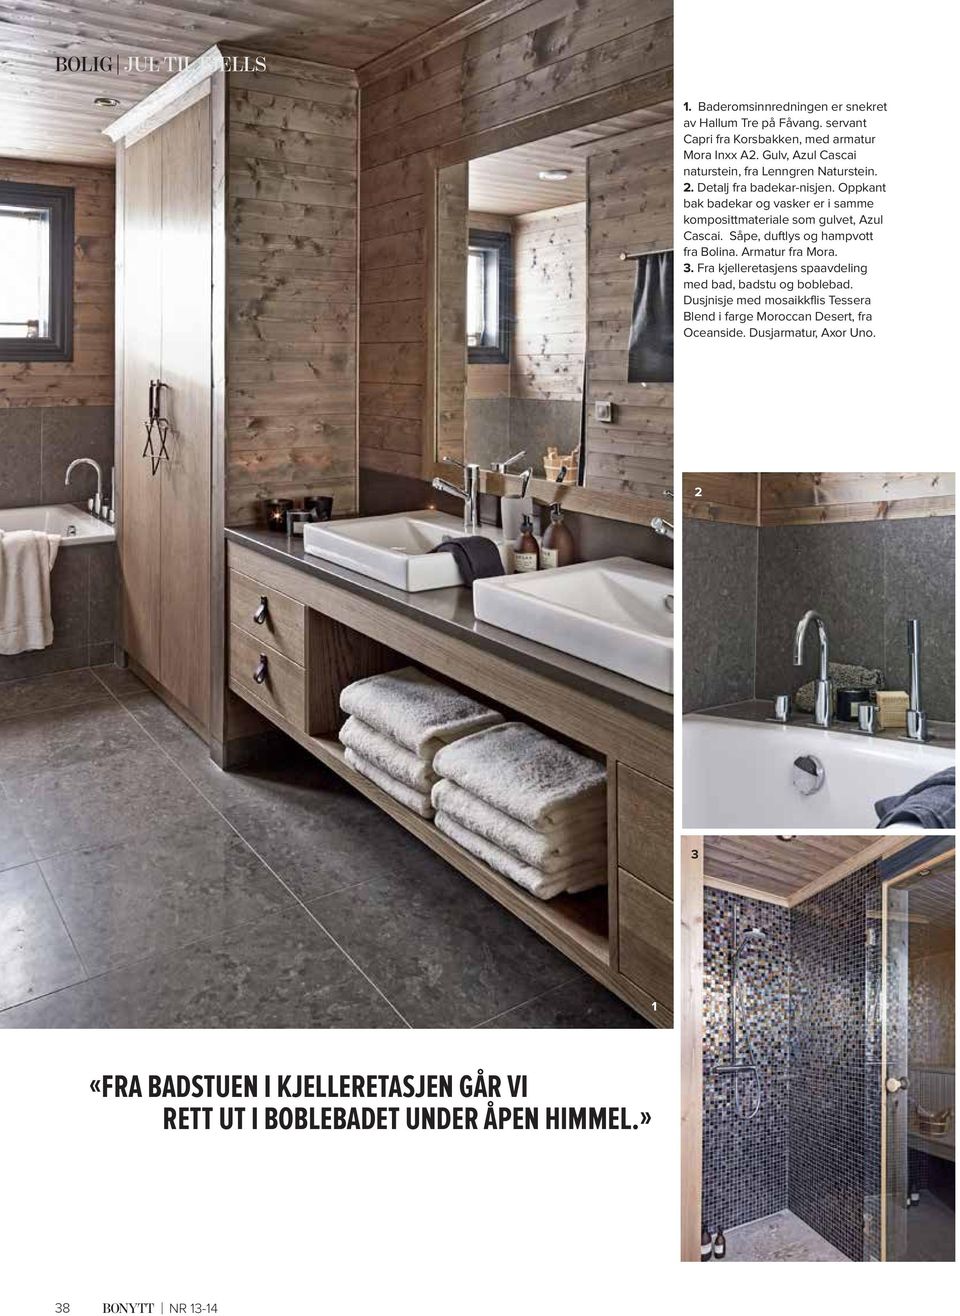 Oppkant bak badekar og vasker er i samme komposittmateriale som gulvet, Azul Cascai. Såpe, duftlys og hampvott fra Bolina. Armatur fra Mora. 3.